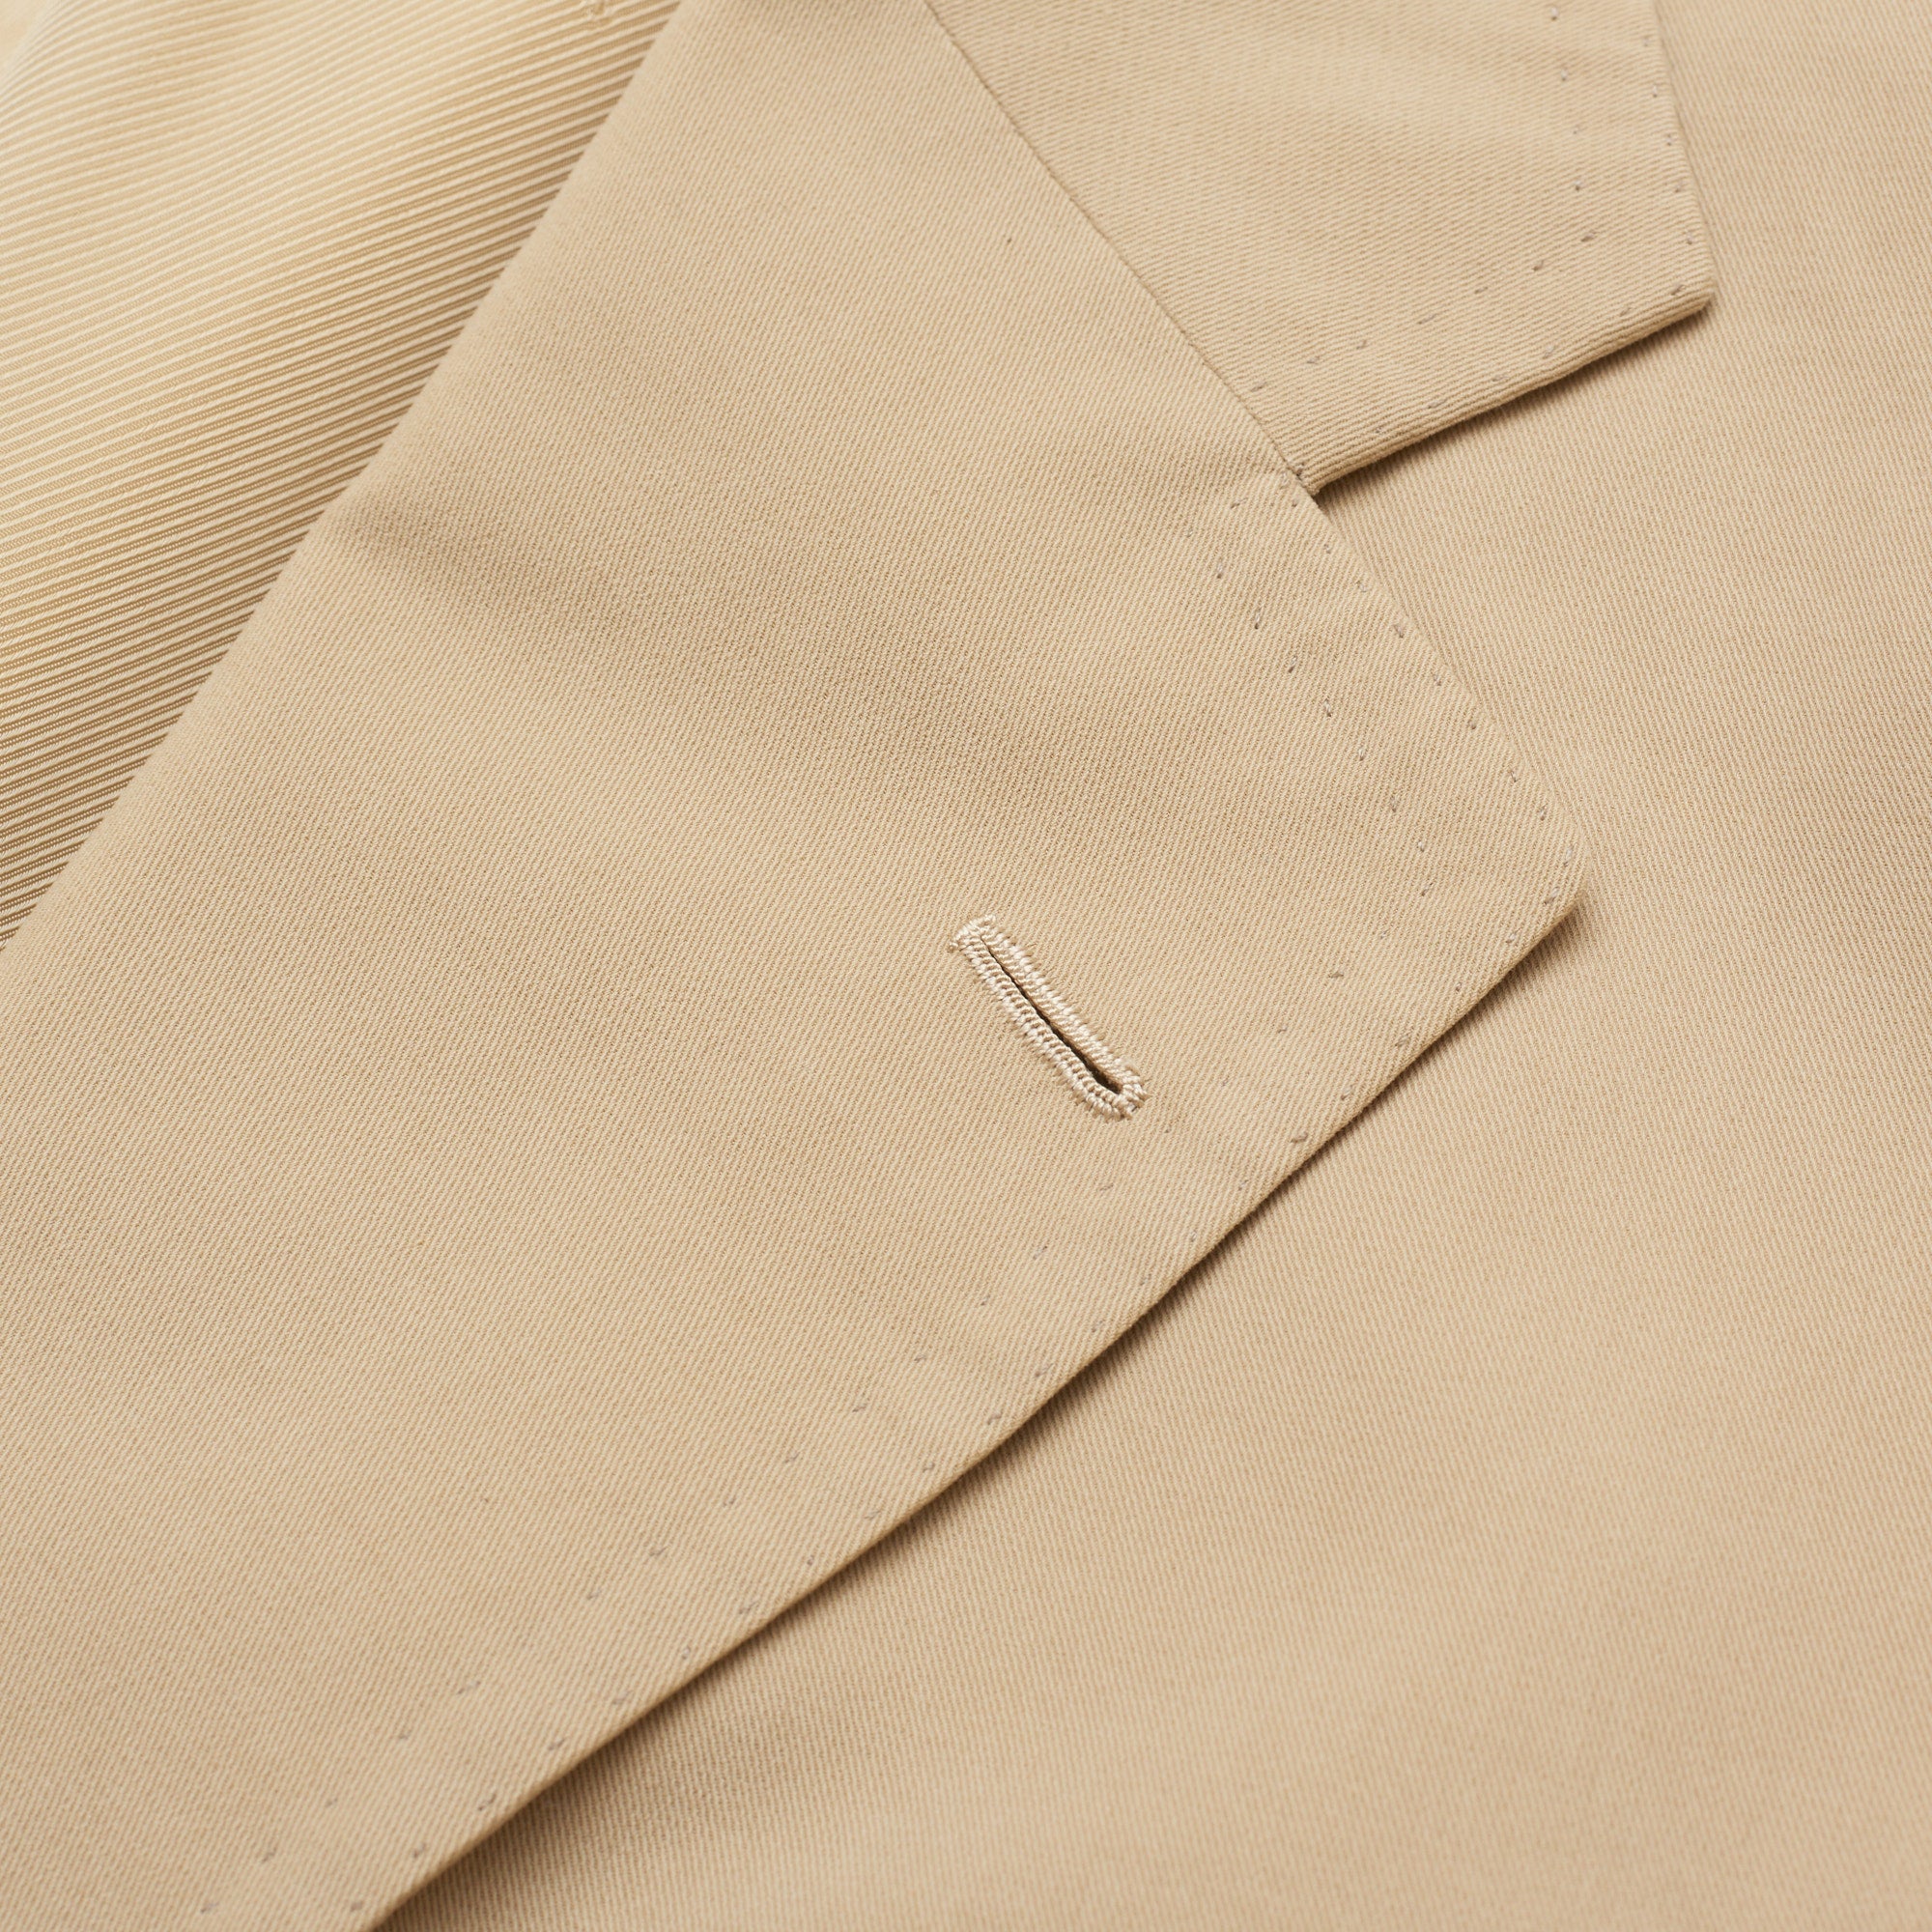 CESARE ATTOLINI Napoli Handmade Beige Twill Cotton Suit EU 54 US 44 Slim Regular Fit CESARE ATTOLINI